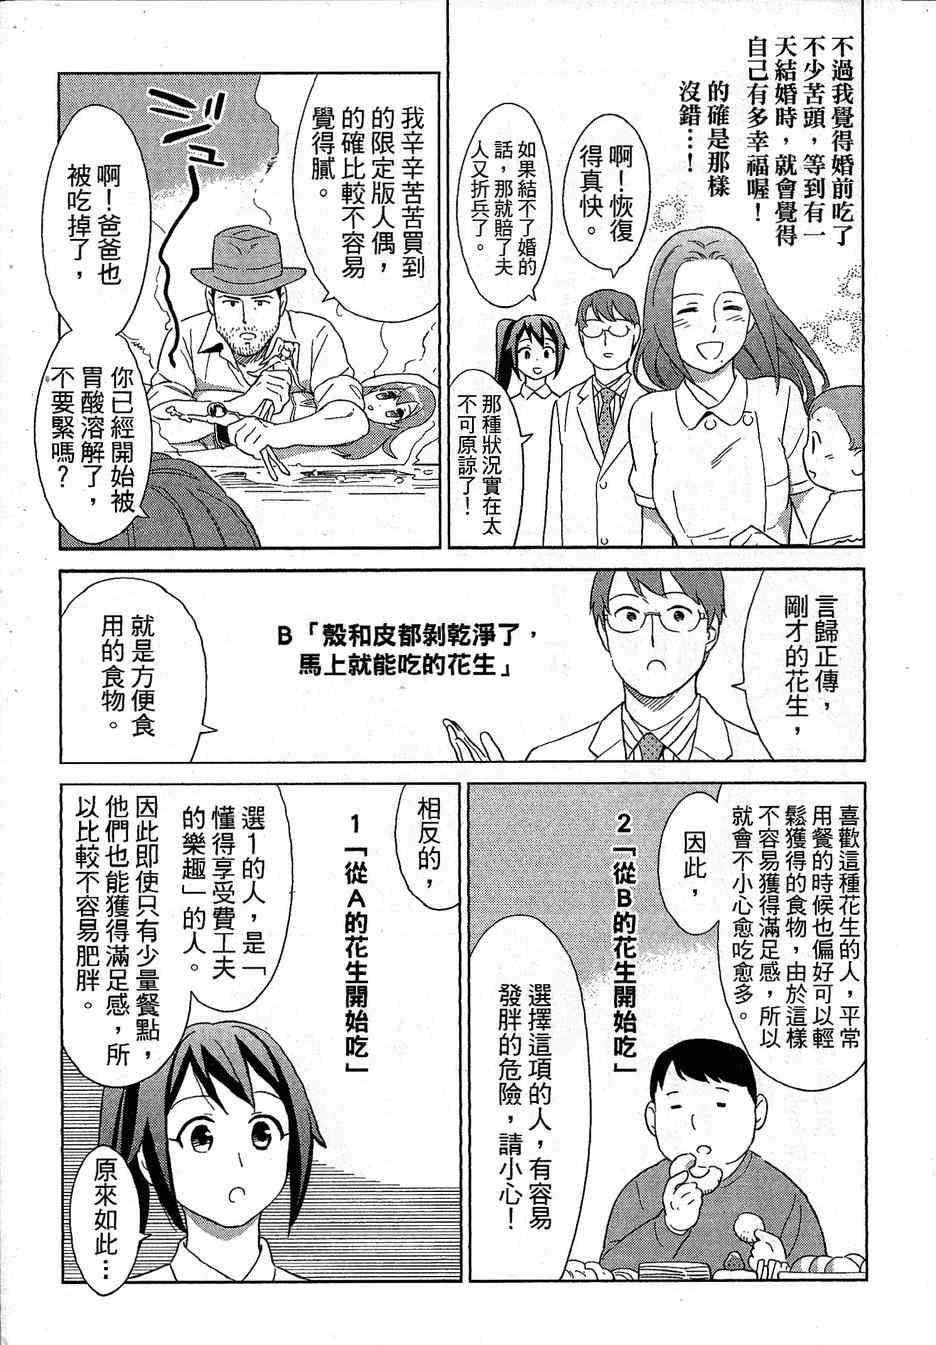 《漫画心疗系》漫画 071-072话